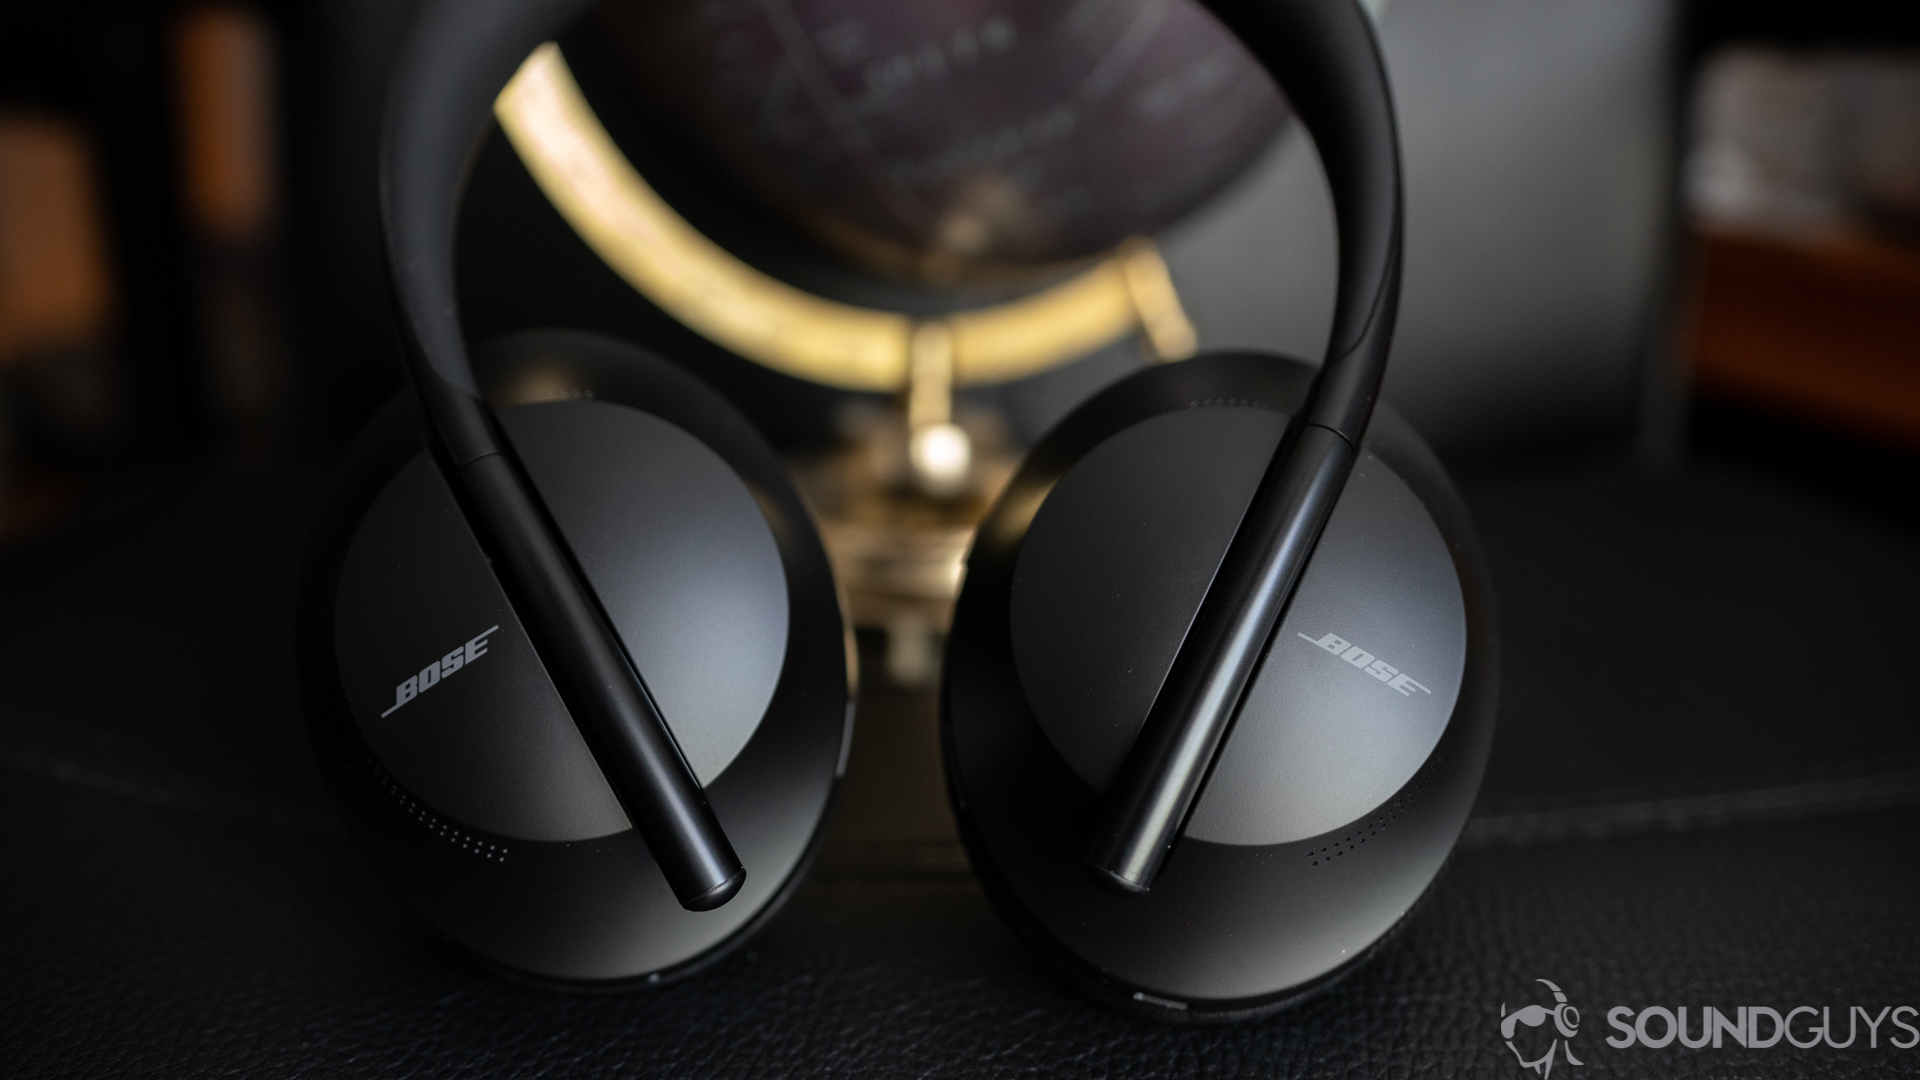 Le casque Bose Noise Cancelling Headphones 700 sur une surface noire.